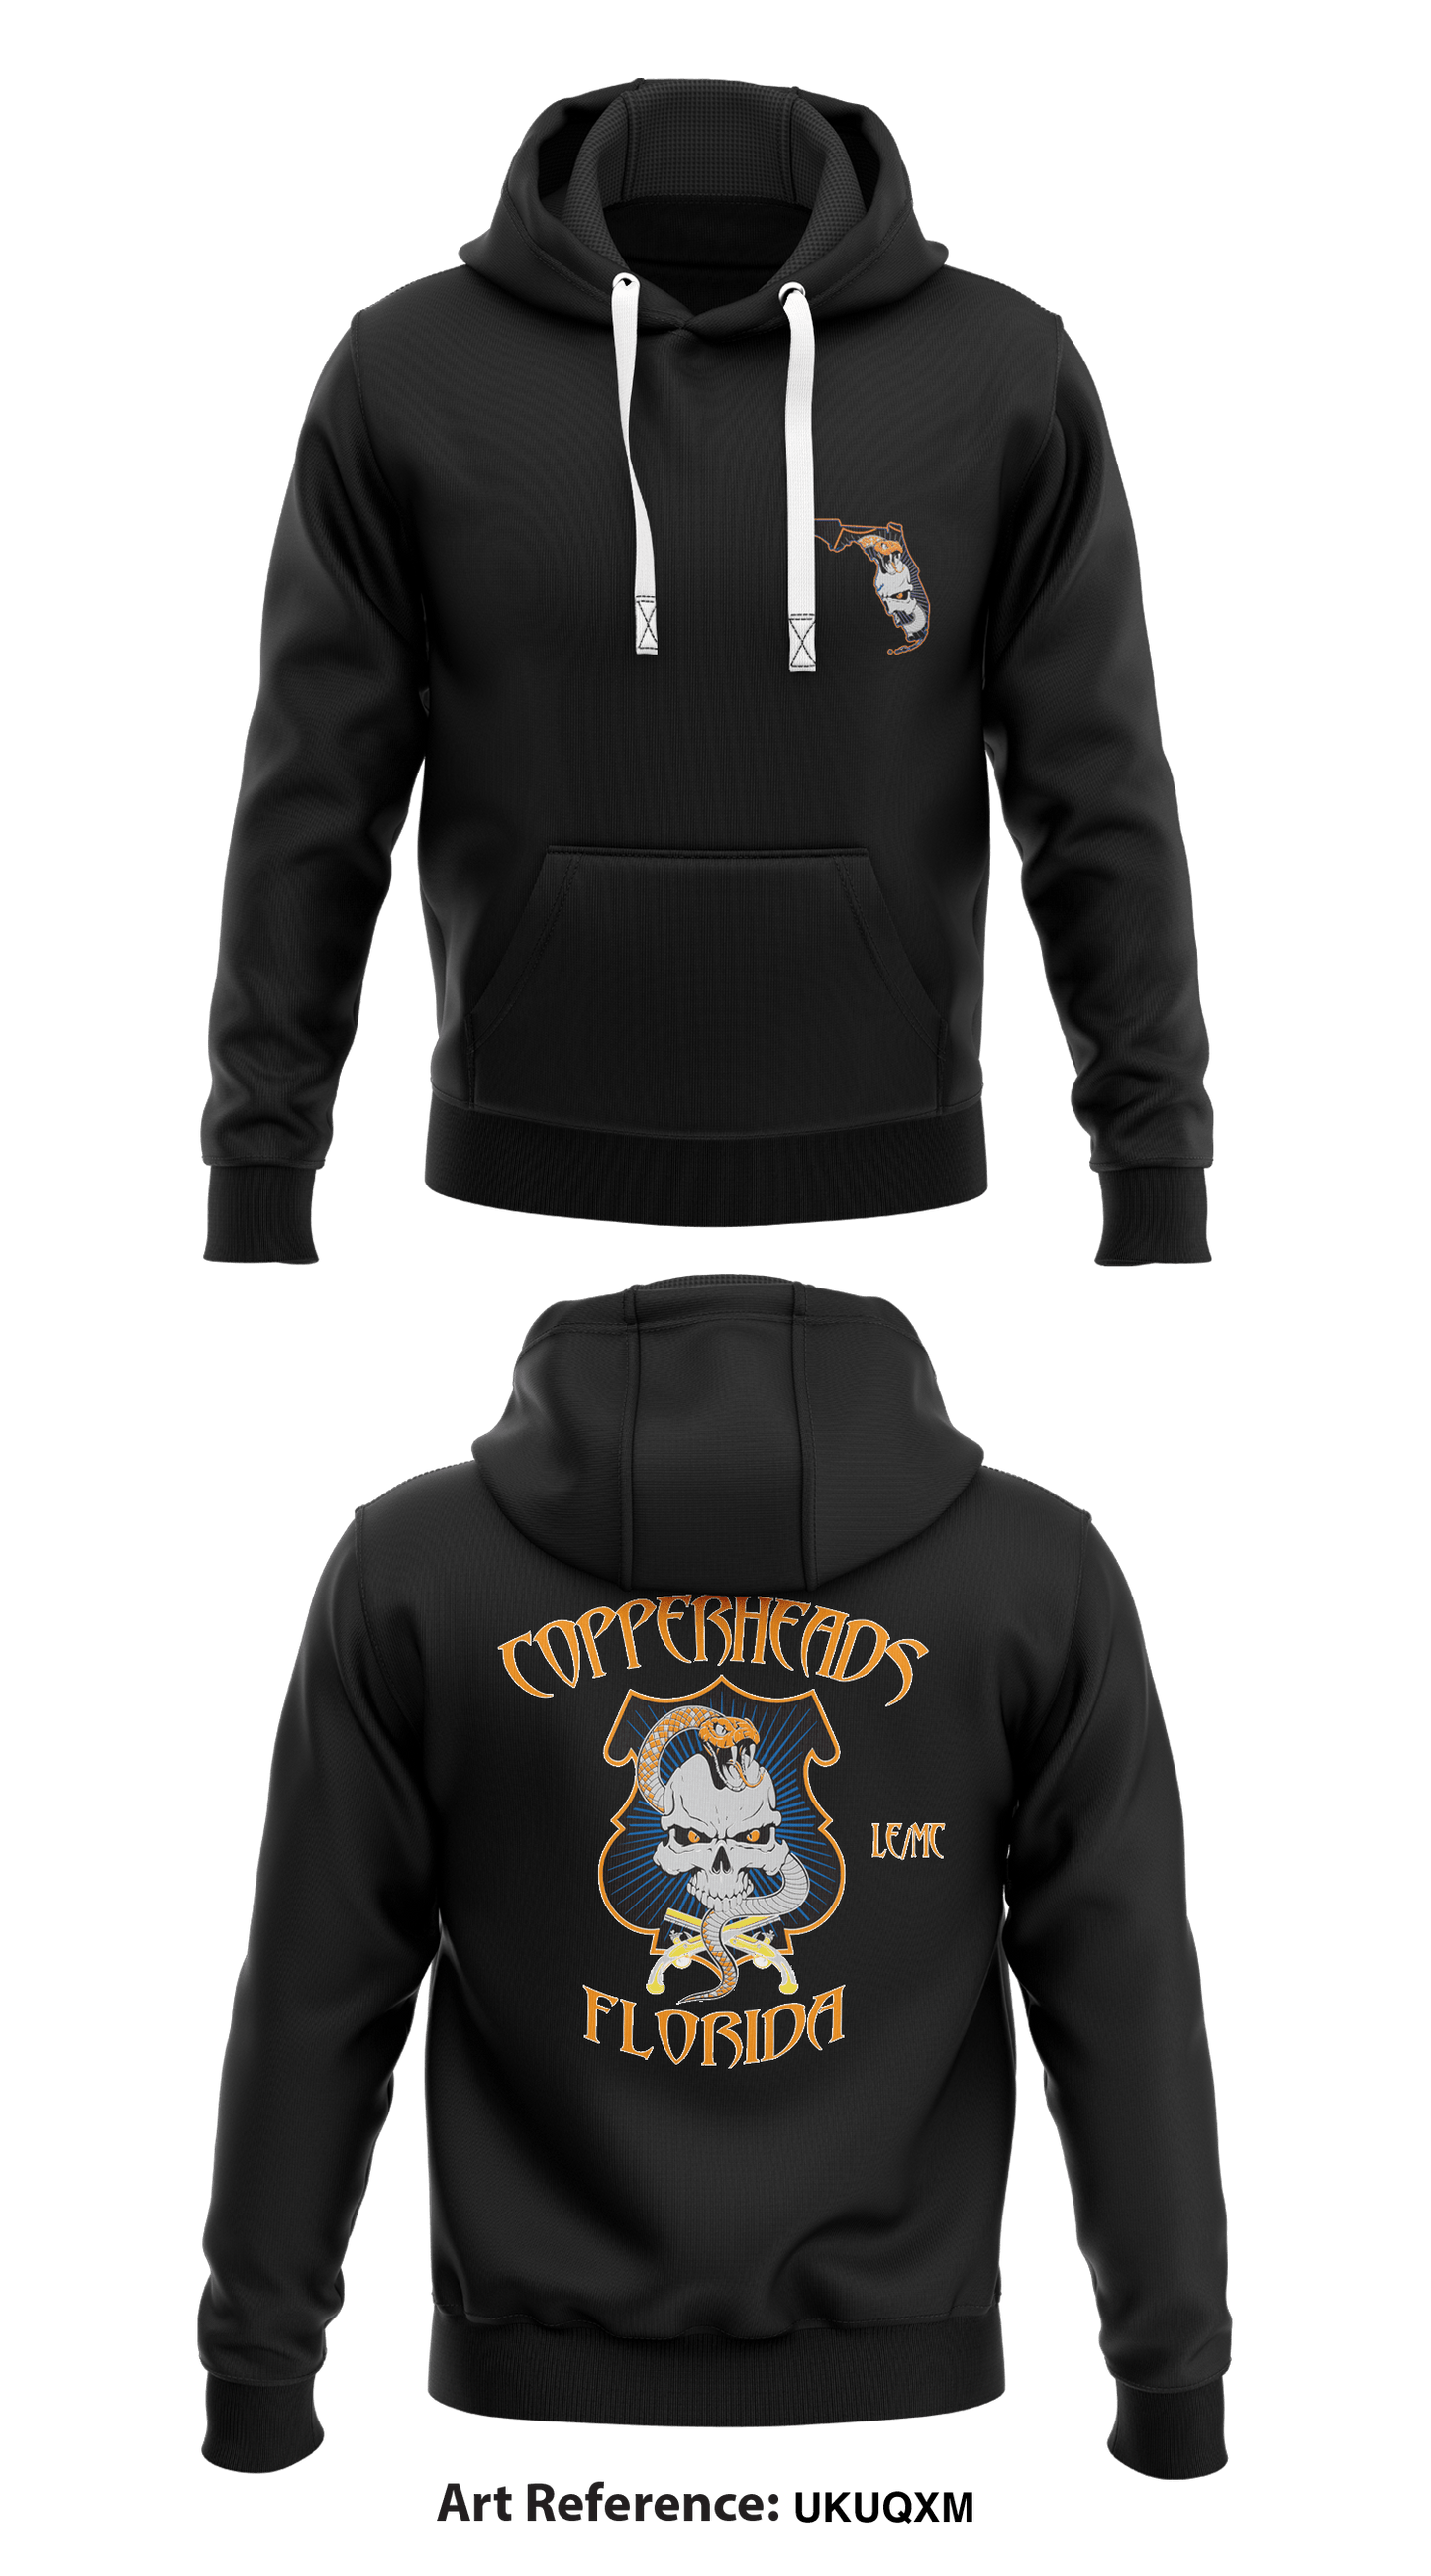 Copperheads Florida  Core Men's Hooded Performance Sweatshirt - UkUqxM